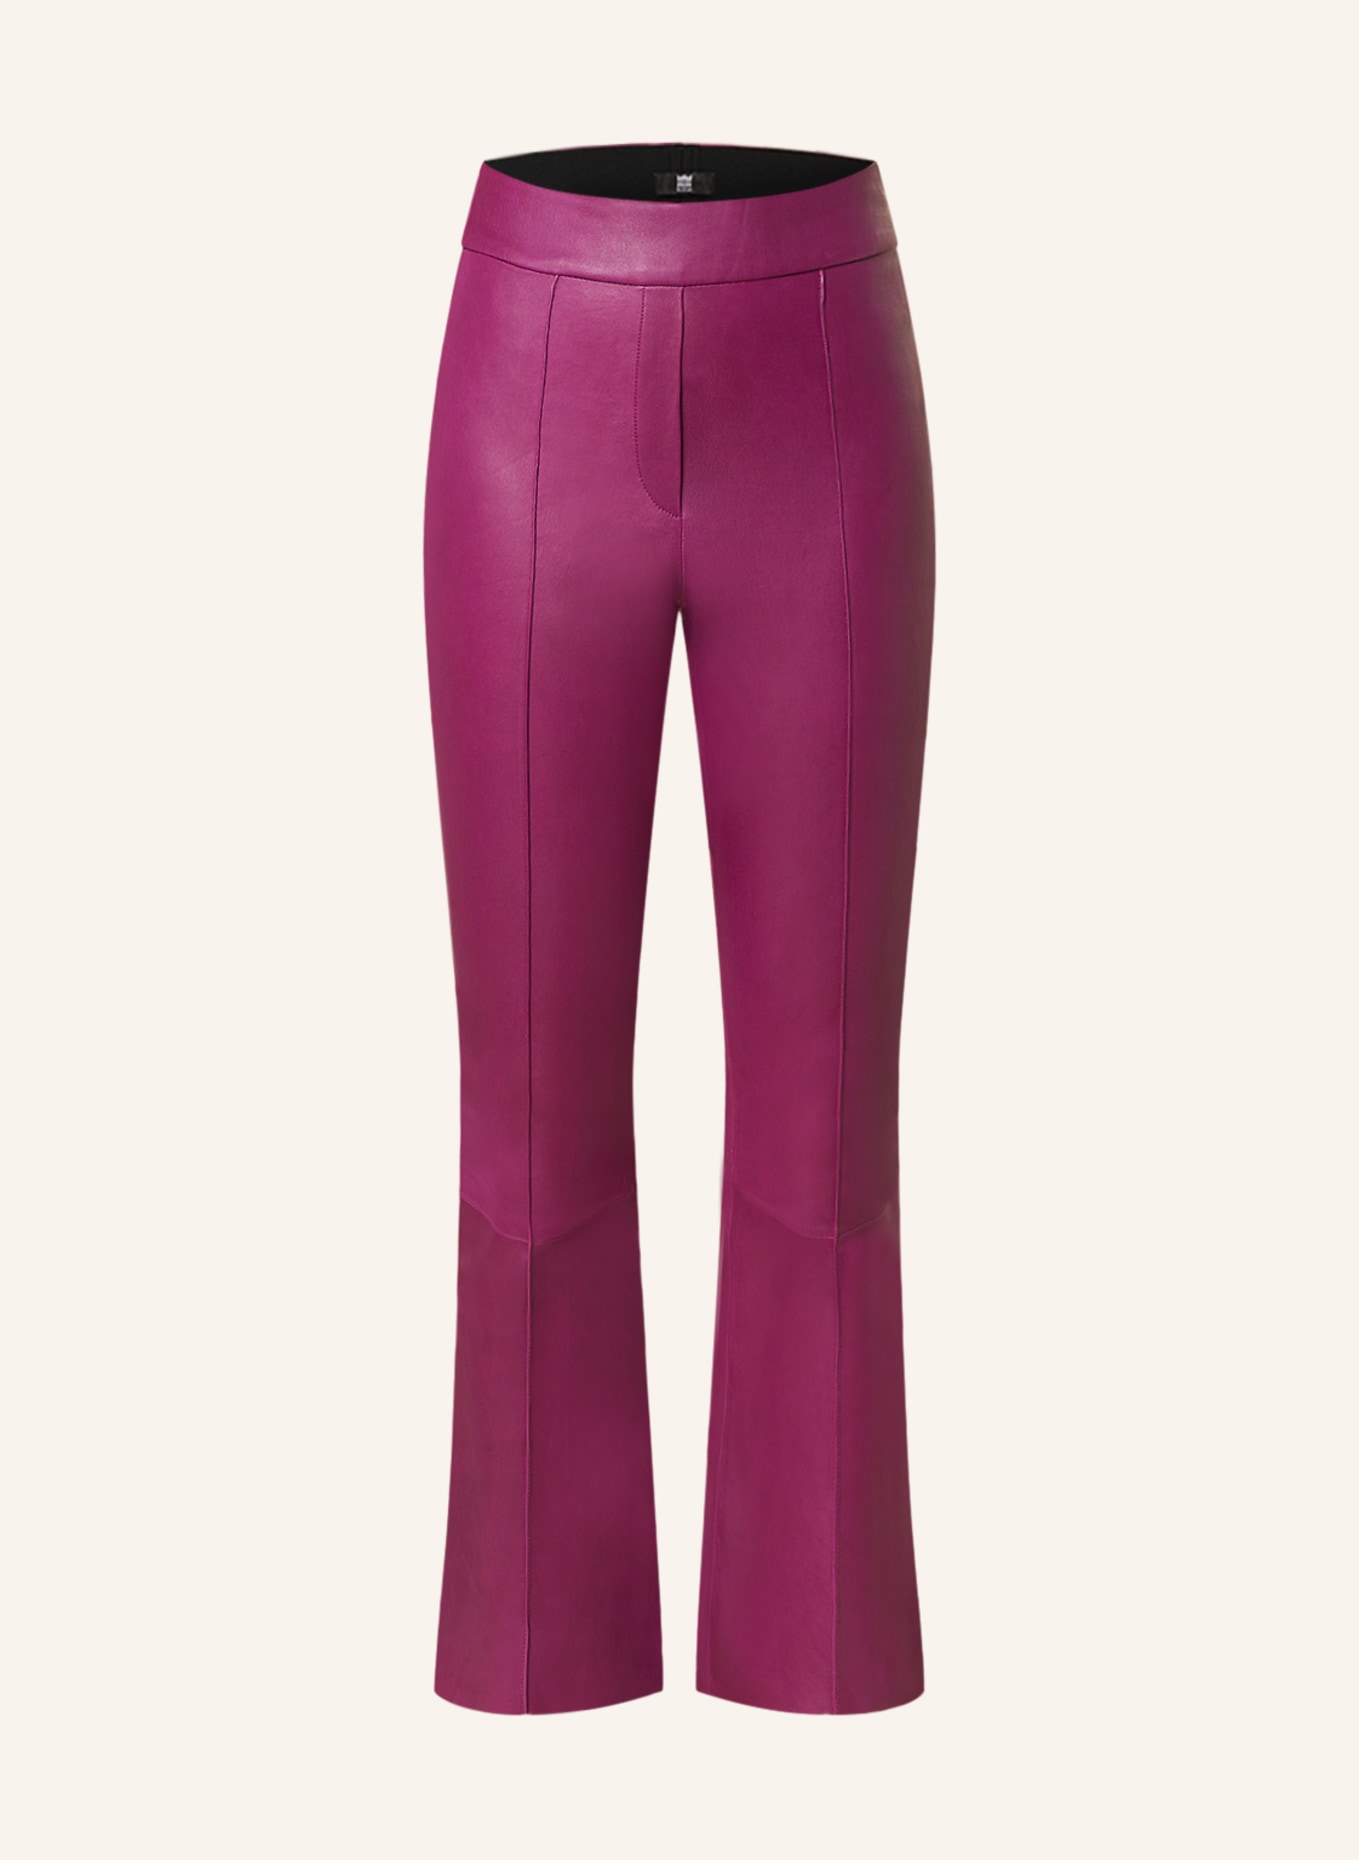 RIANI Leather trousers, Color: FUCHSIA (Image 1)